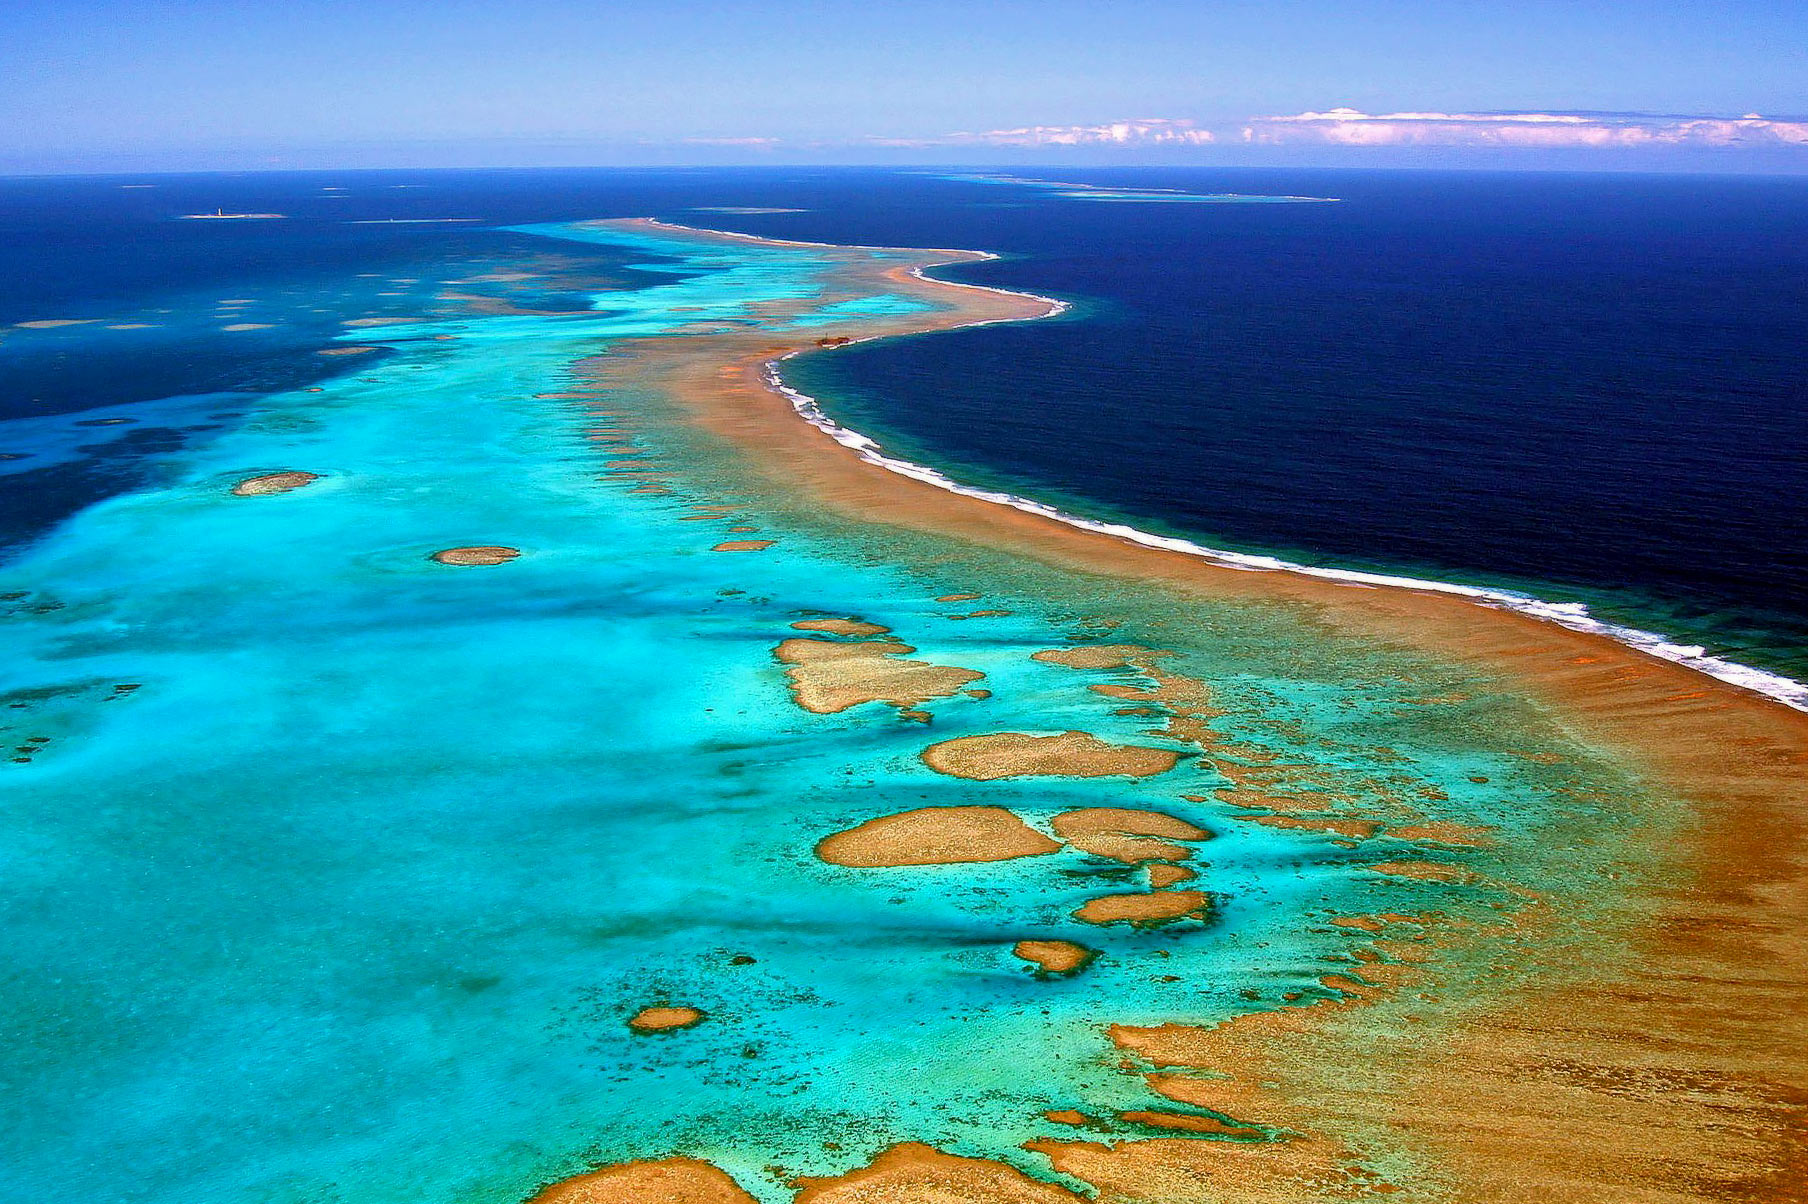 New Caledonia’s reefs